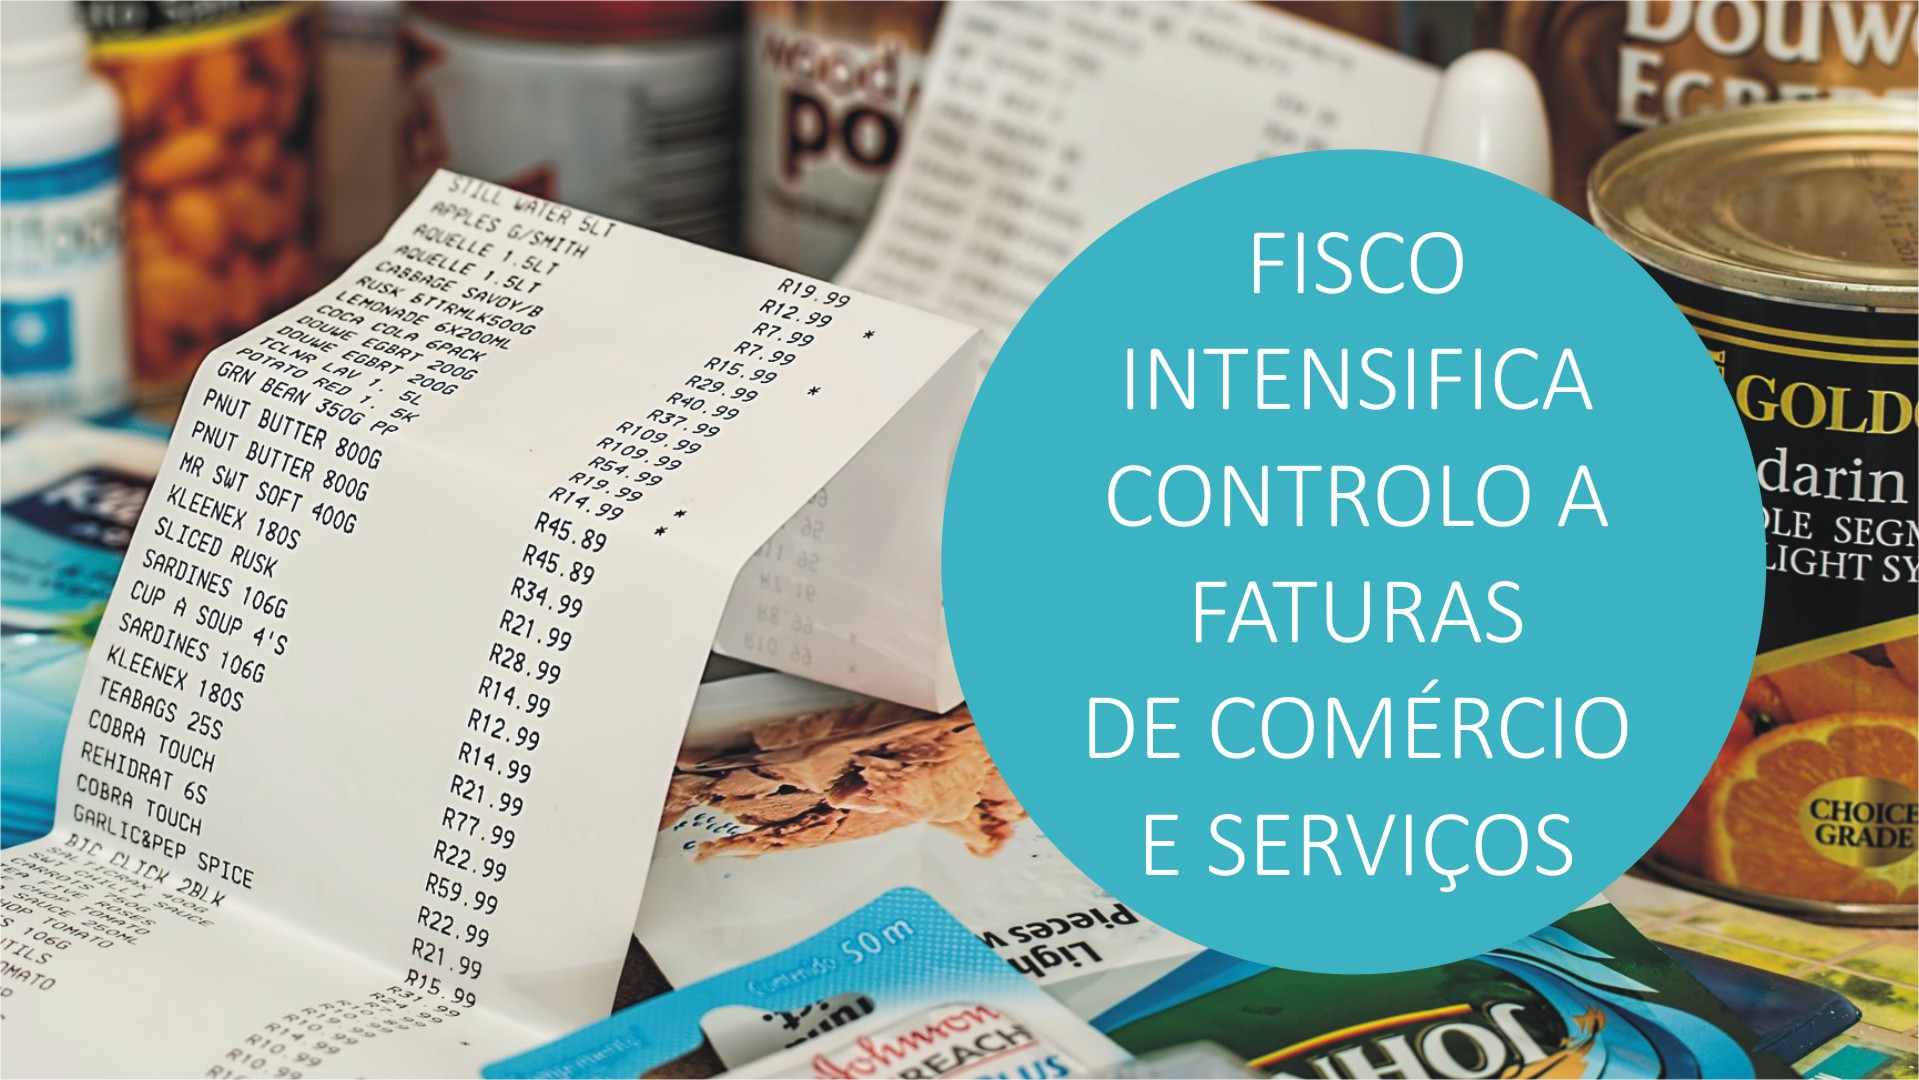 Fisco Intensifica Controlo a Faturas de Comércio e Serviços